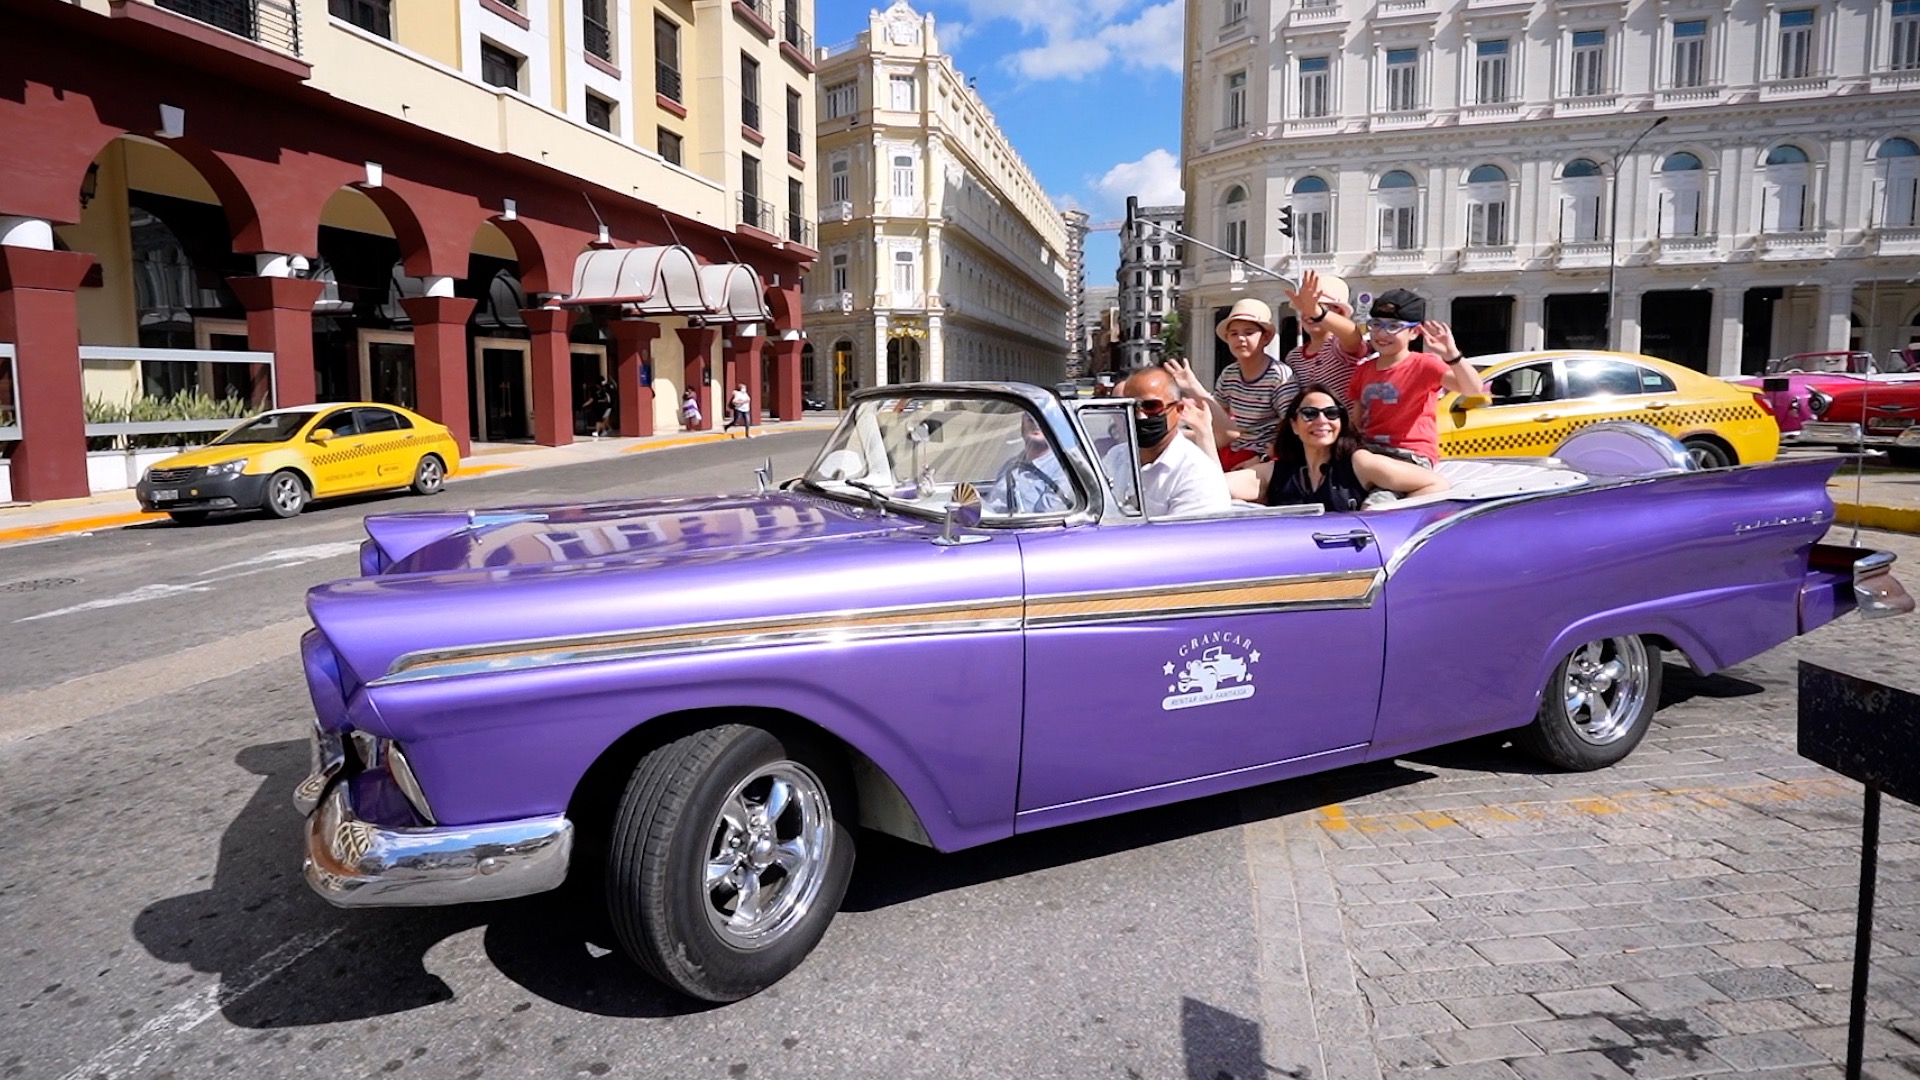 Con estas caras de ilusión comenzamos nuestra excursión por La Habana en un coche antiguo